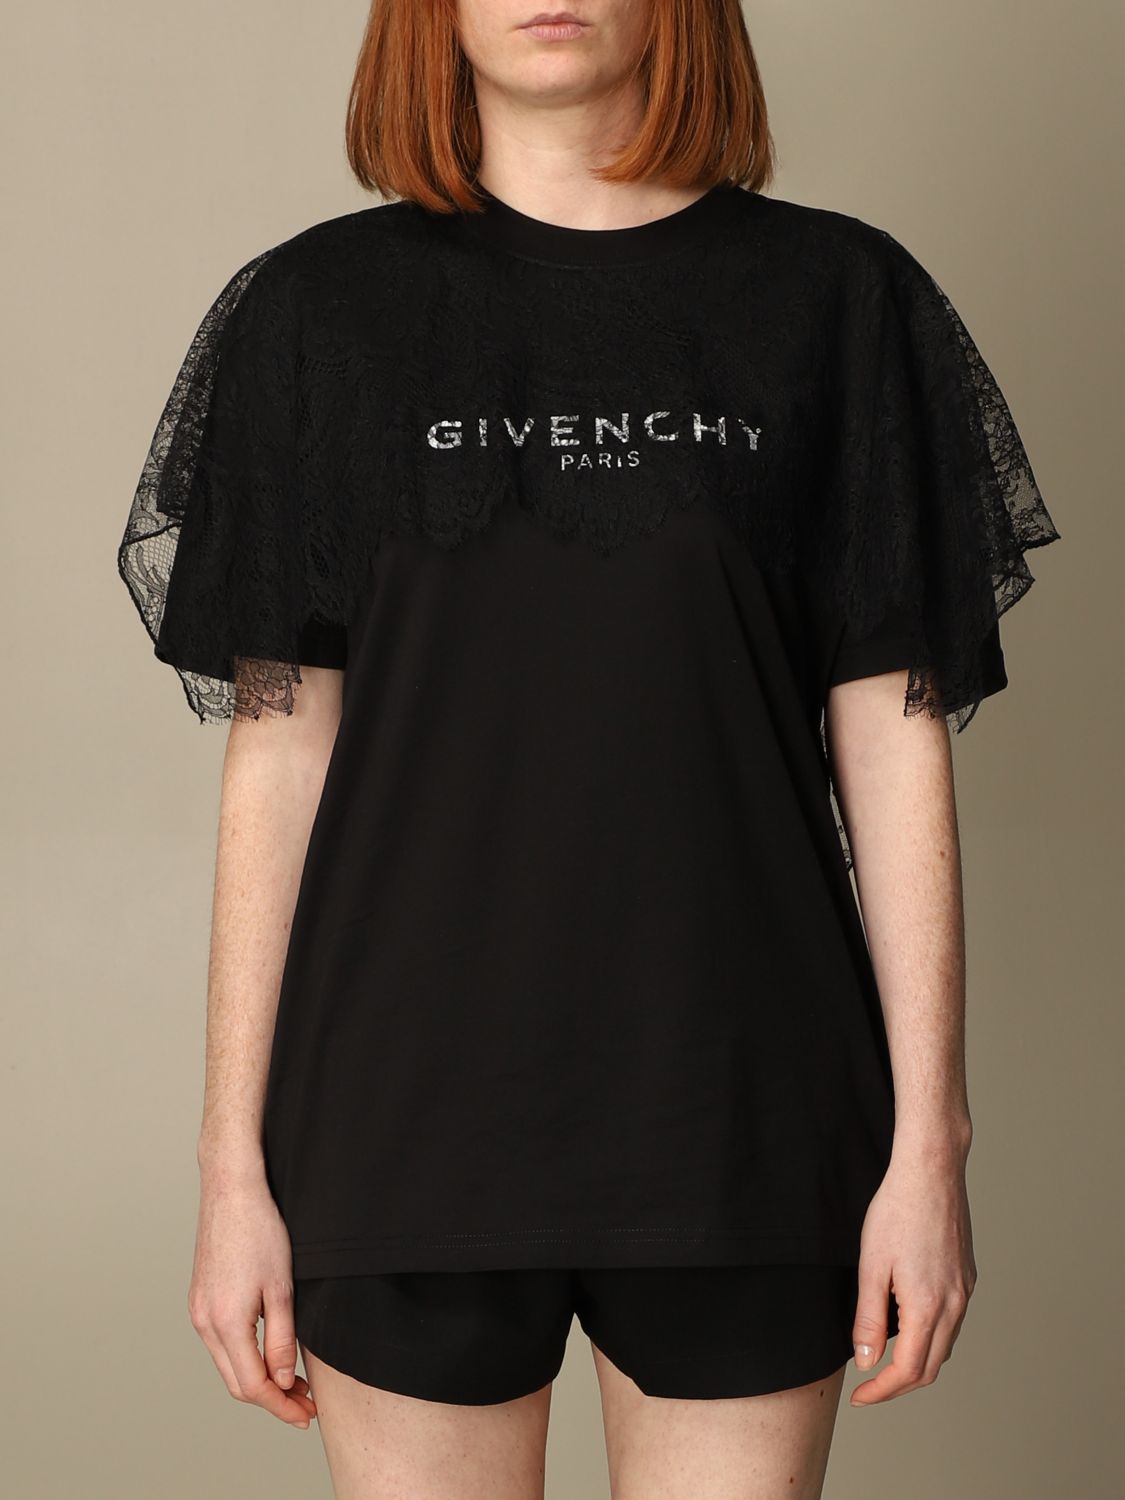 GIVENCHY: Camiseta mujer | Camiseta Givenchy Mujer Negro | Camiseta Givenchy  BW708R3Z4U Giglio ES